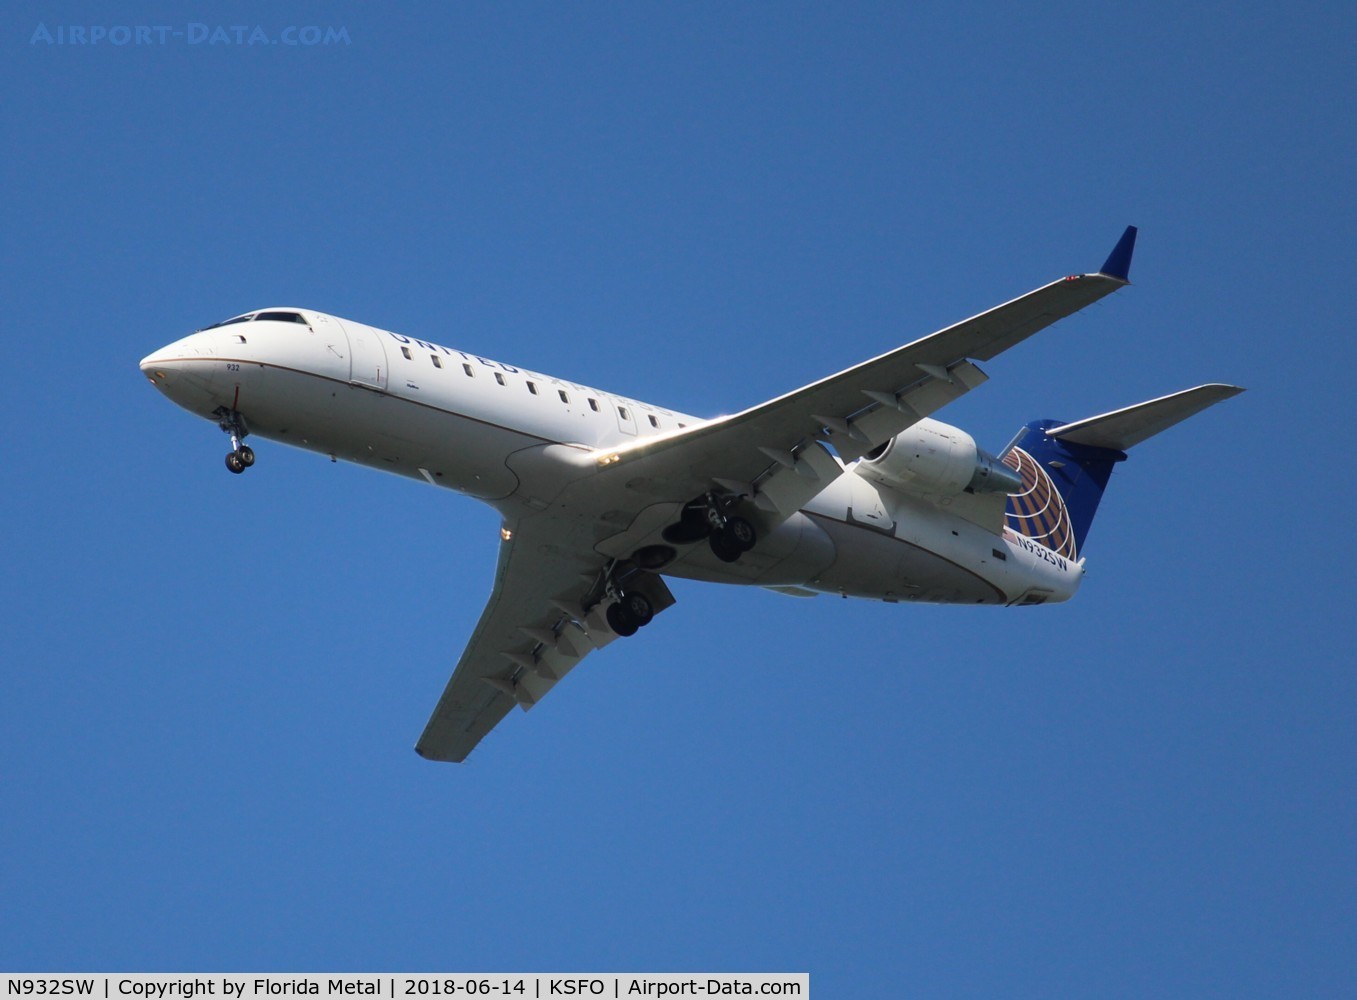 N932SW, 2002 Bombardier CRJ-200LR (CL-600-2B19) C/N 7714, SFO spotting